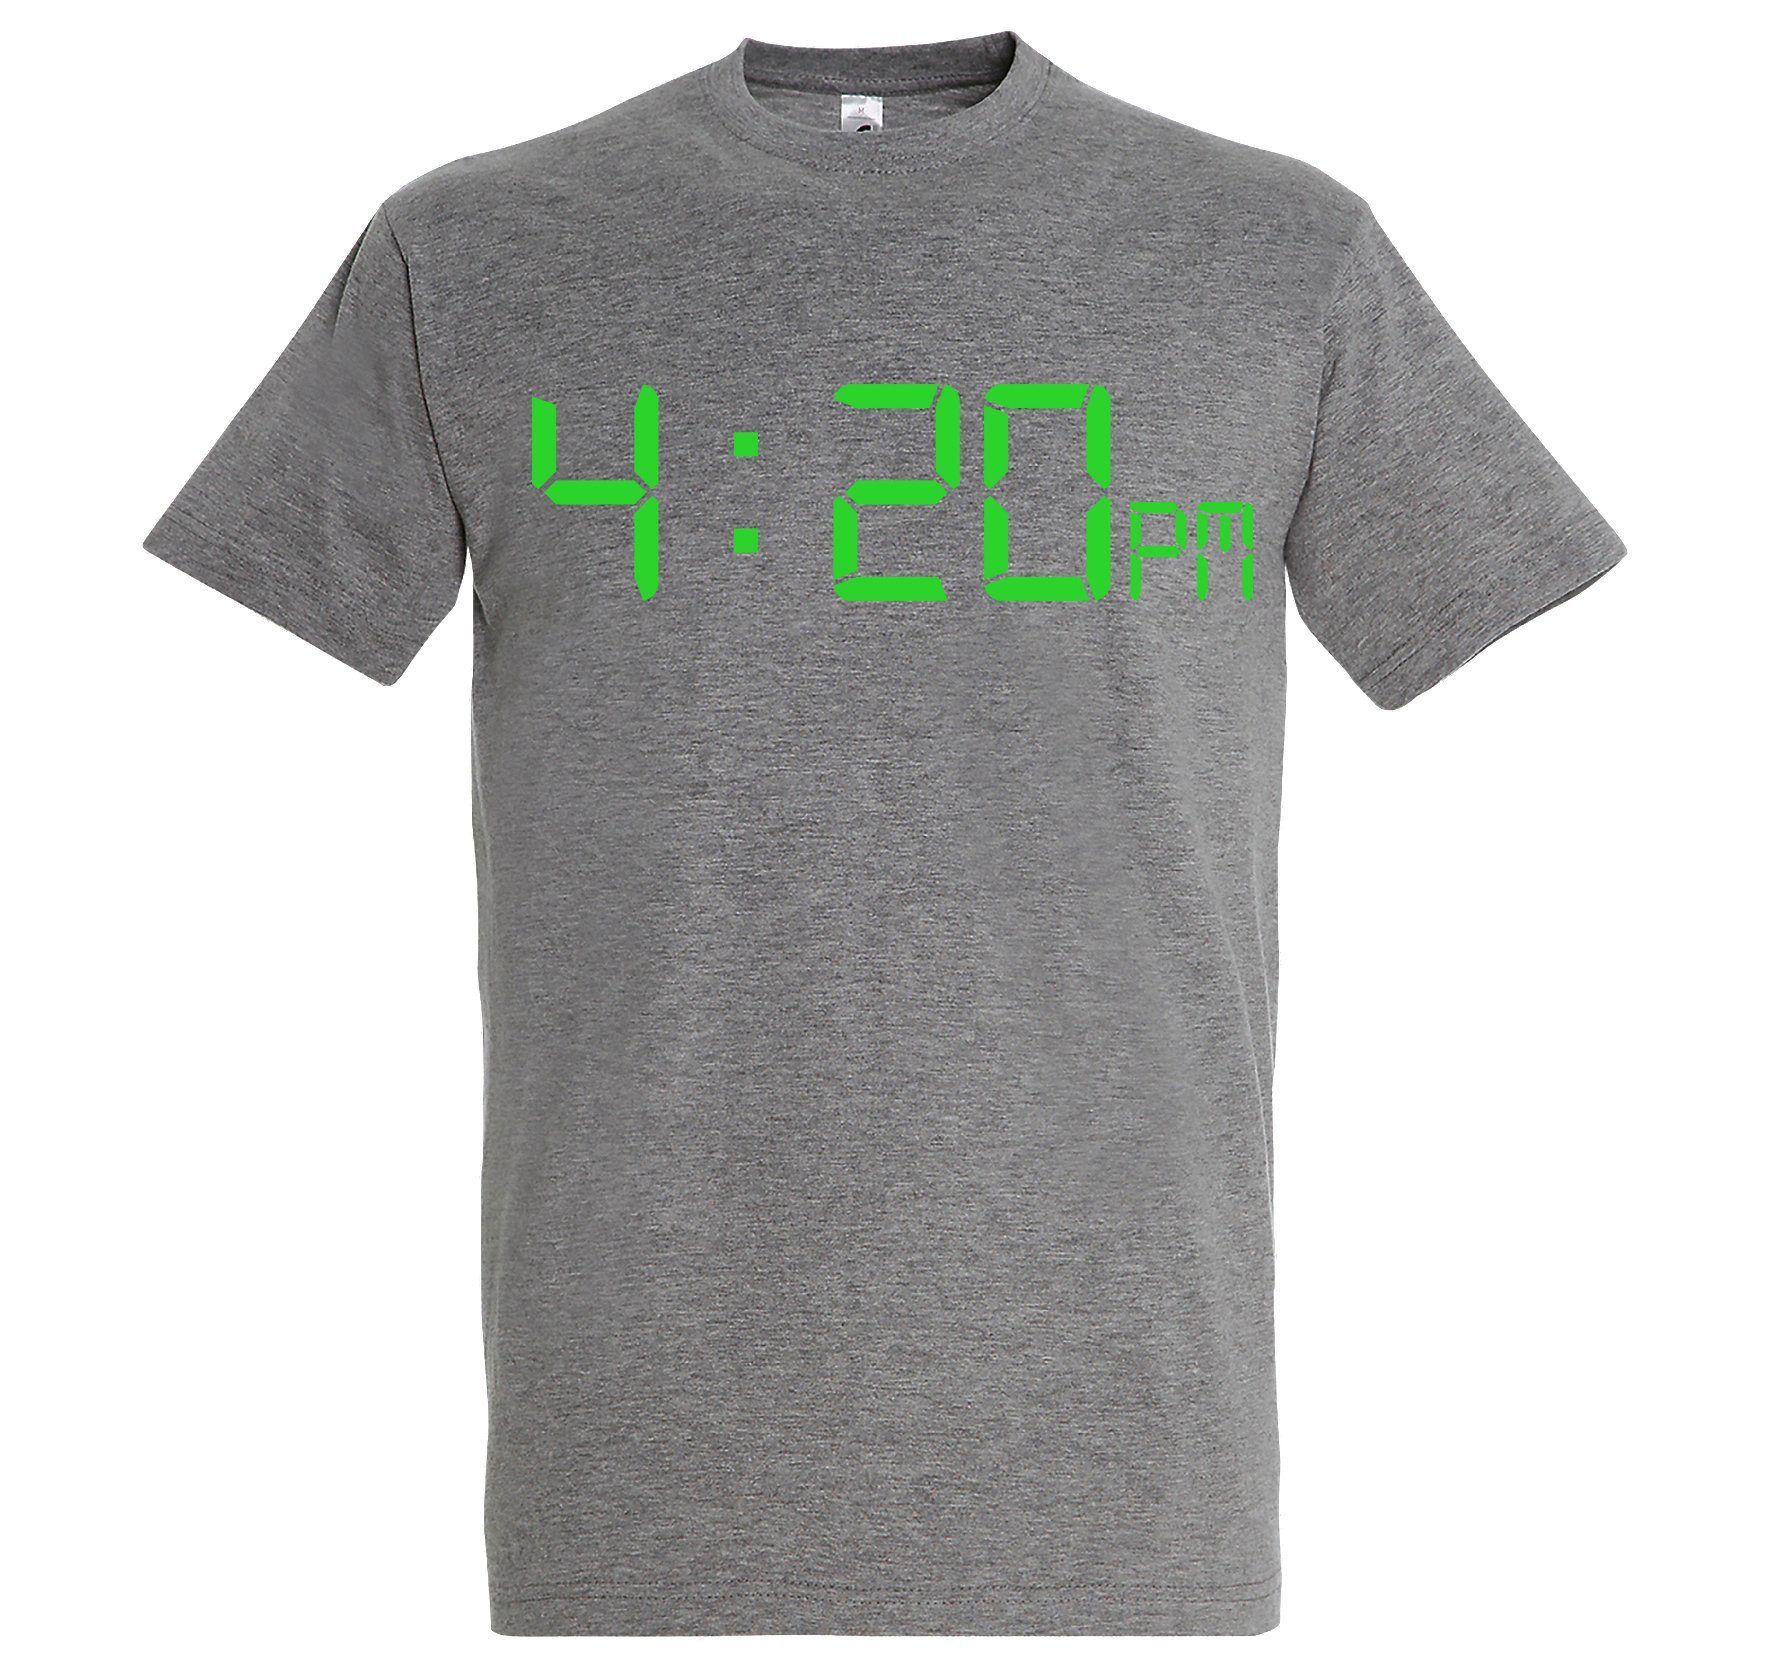 Herren mit T-Shirt Designz T-Shirt Grau Frontprint lustigem 4:20 Youth